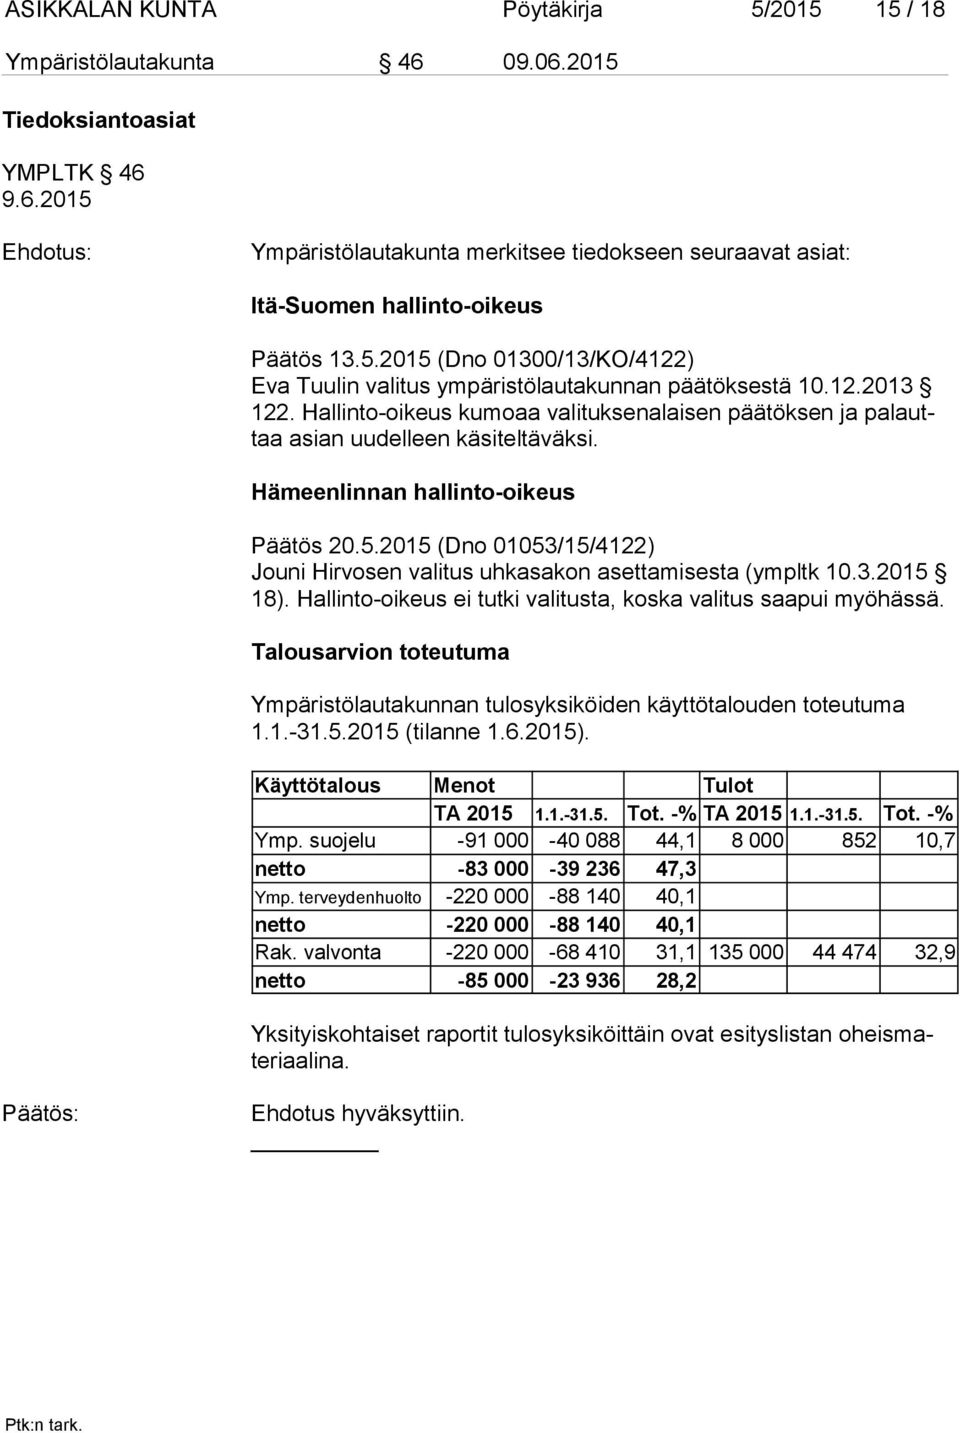 Hämeenlinnan hallinto-oikeus Päätös 20.5.2015 (Dno 01053/15/4122) Jouni Hirvosen valitus uhkasakon asettamisesta (ympltk 10.3.2015 18).